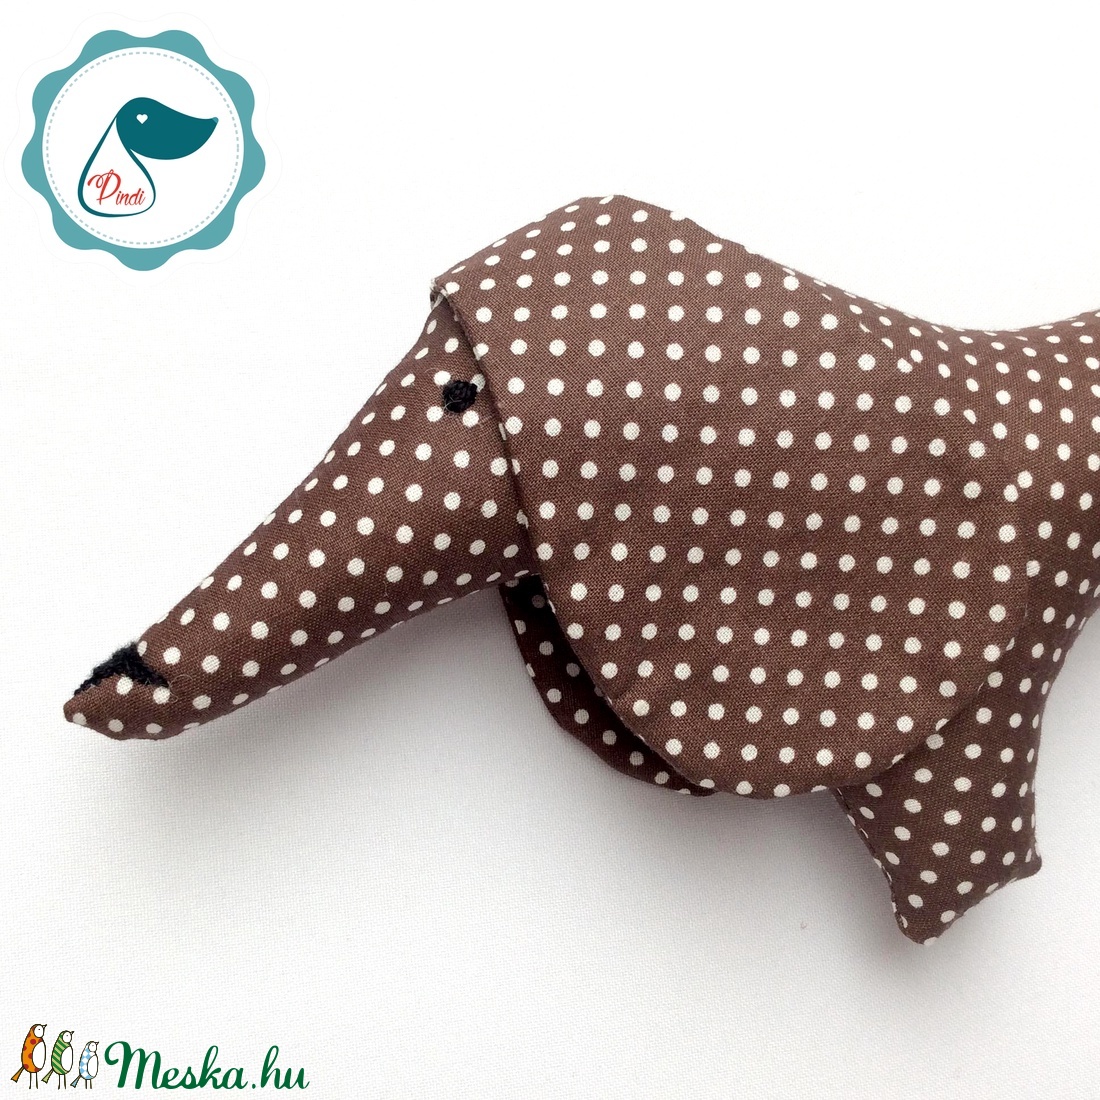 Tacskó - csoki barna  pöttyös egyedi tervezésű kézműves játék - textiljáték - tacsi kutya - gyerek játék - játék & sport - plüssállat & játékfigura - kutya - Meska.hu